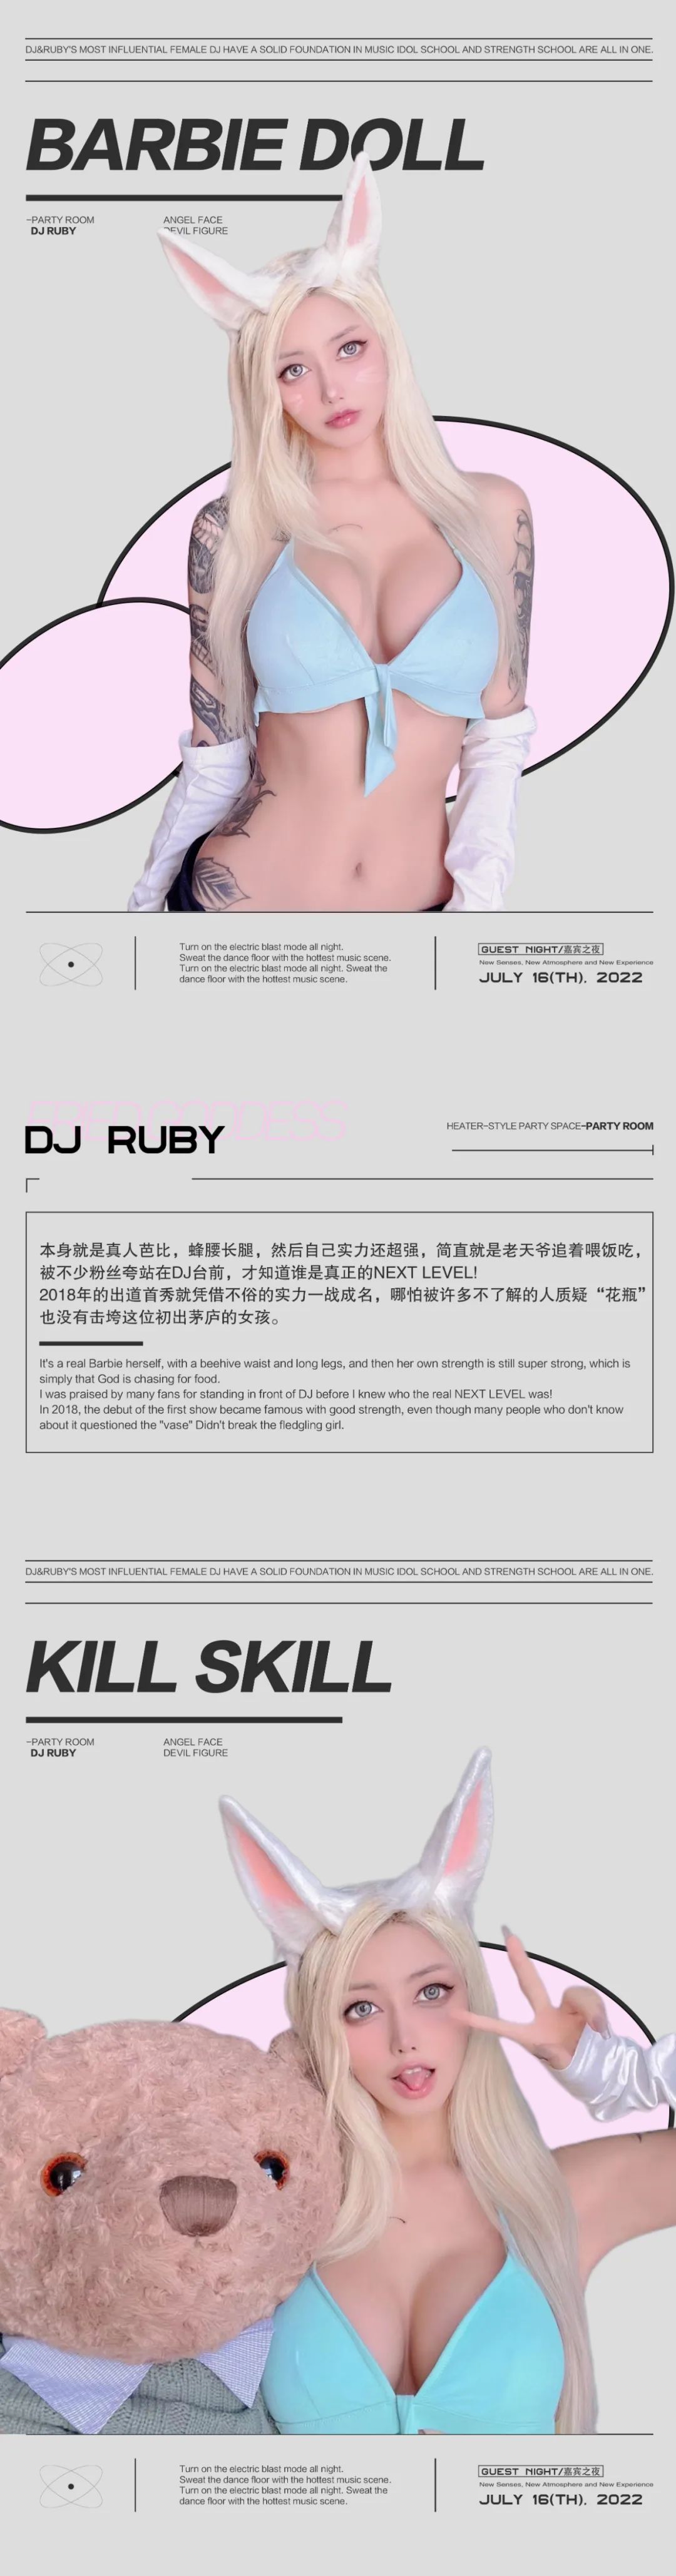 𝐏𝐀𝐑𝐓𝐘 𝐑𝐎𝐎𝐌 | 7月16日| 夜店新宠&弹跳女神DJ RUBY夏日电音轰趴-丽水Party Room百大电音剧场